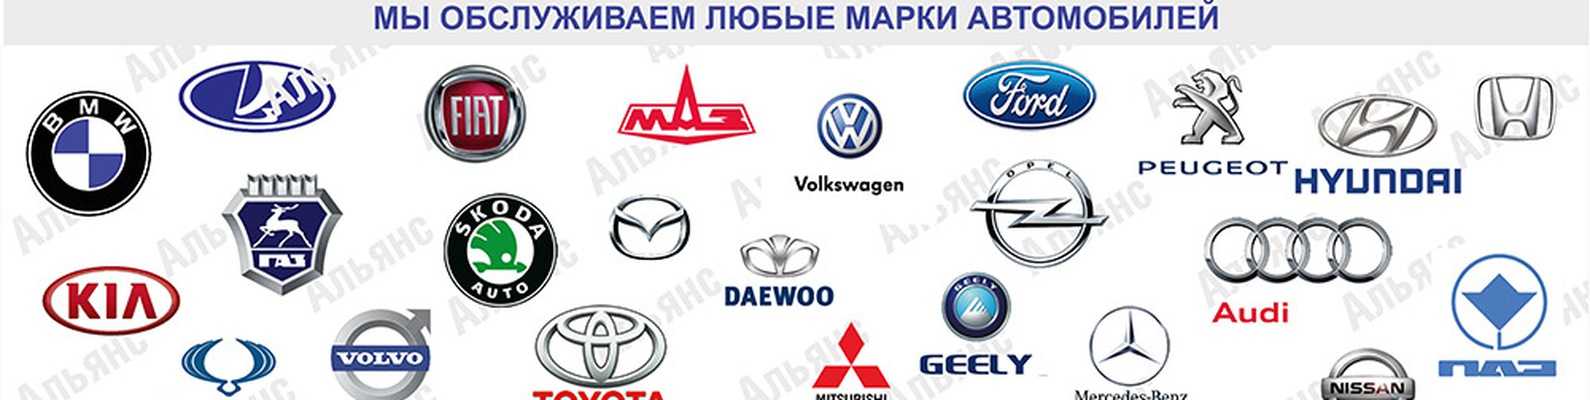 Логотипы корейских автомобилей с названиями фото на русском языке